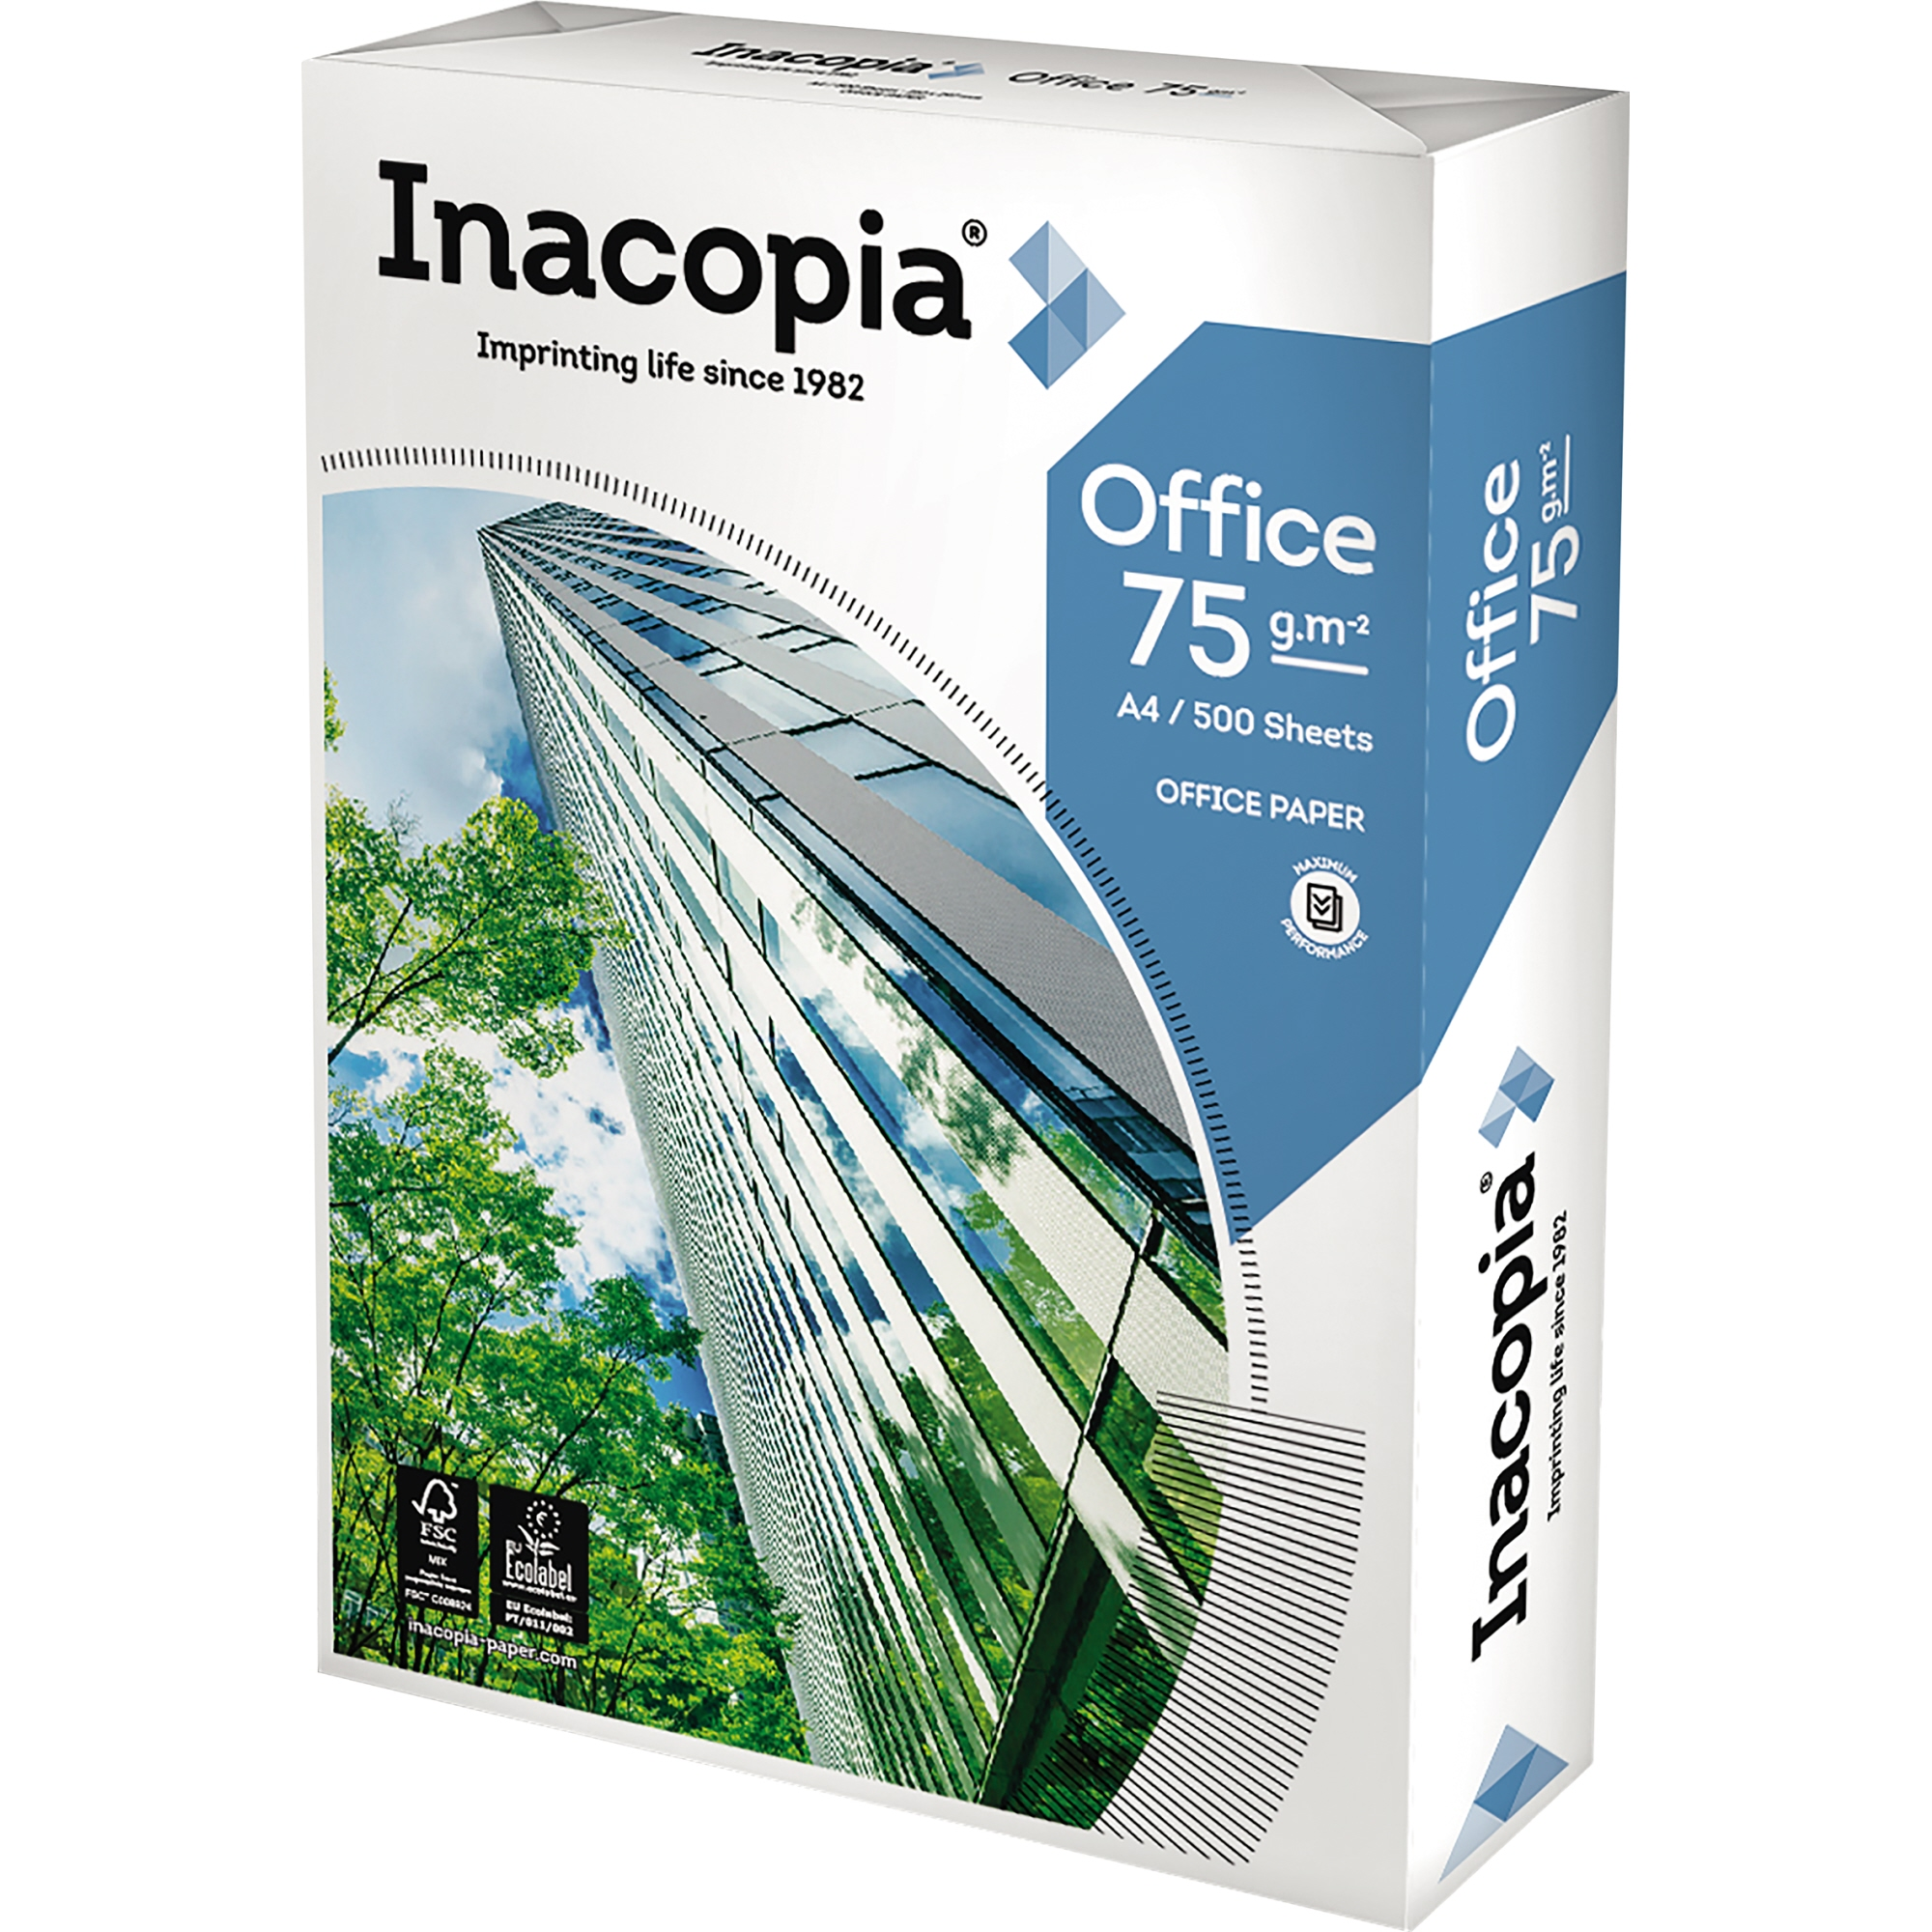 INACOPIA Kopierpapier 2fach gel. A4 Kopierpapier Office A4 1 Bl./Pack. Packung 020807511001 ws 500